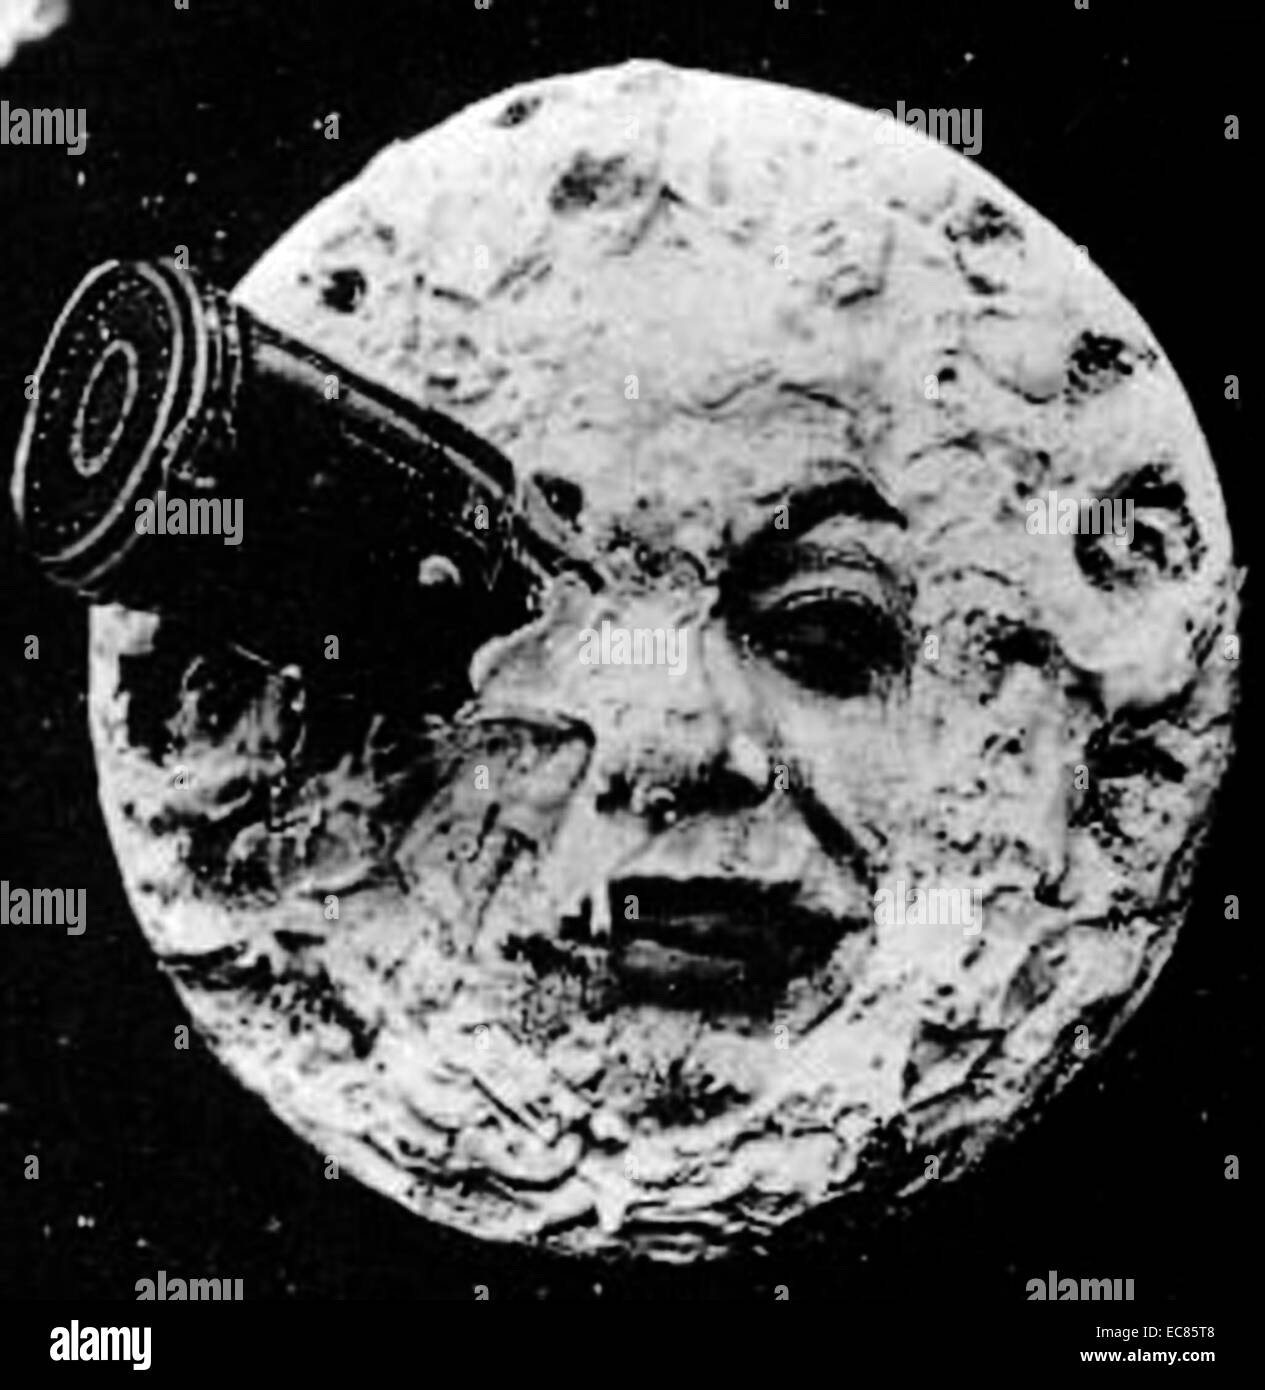 L'uomo della luna è colpito da un veicolo spaziale nel 1902 fantasy film Le Voyage dans la Lune. Questo telaio dal film è un esempio di un immagine convenzionati alcuna attinenza alle reali caratteristiche lunare Foto Stock